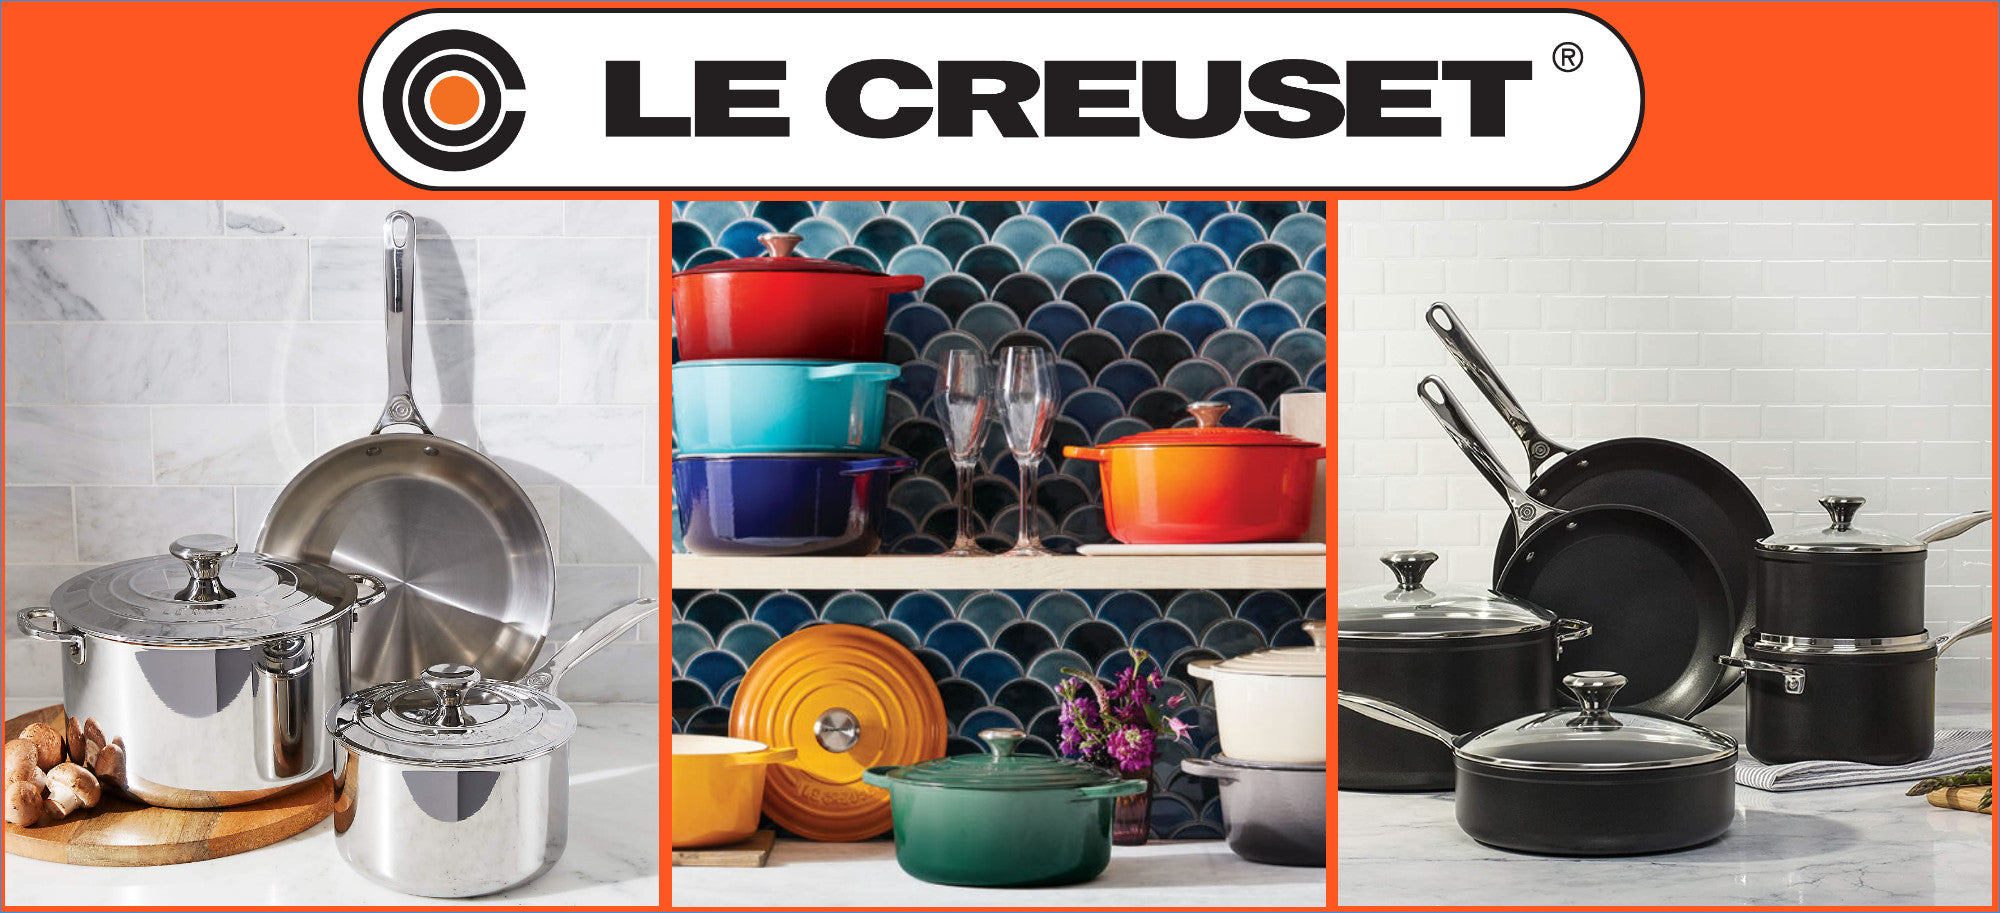 Le Creuset Cast Iron Cookware Set - 9 Piece Cerise